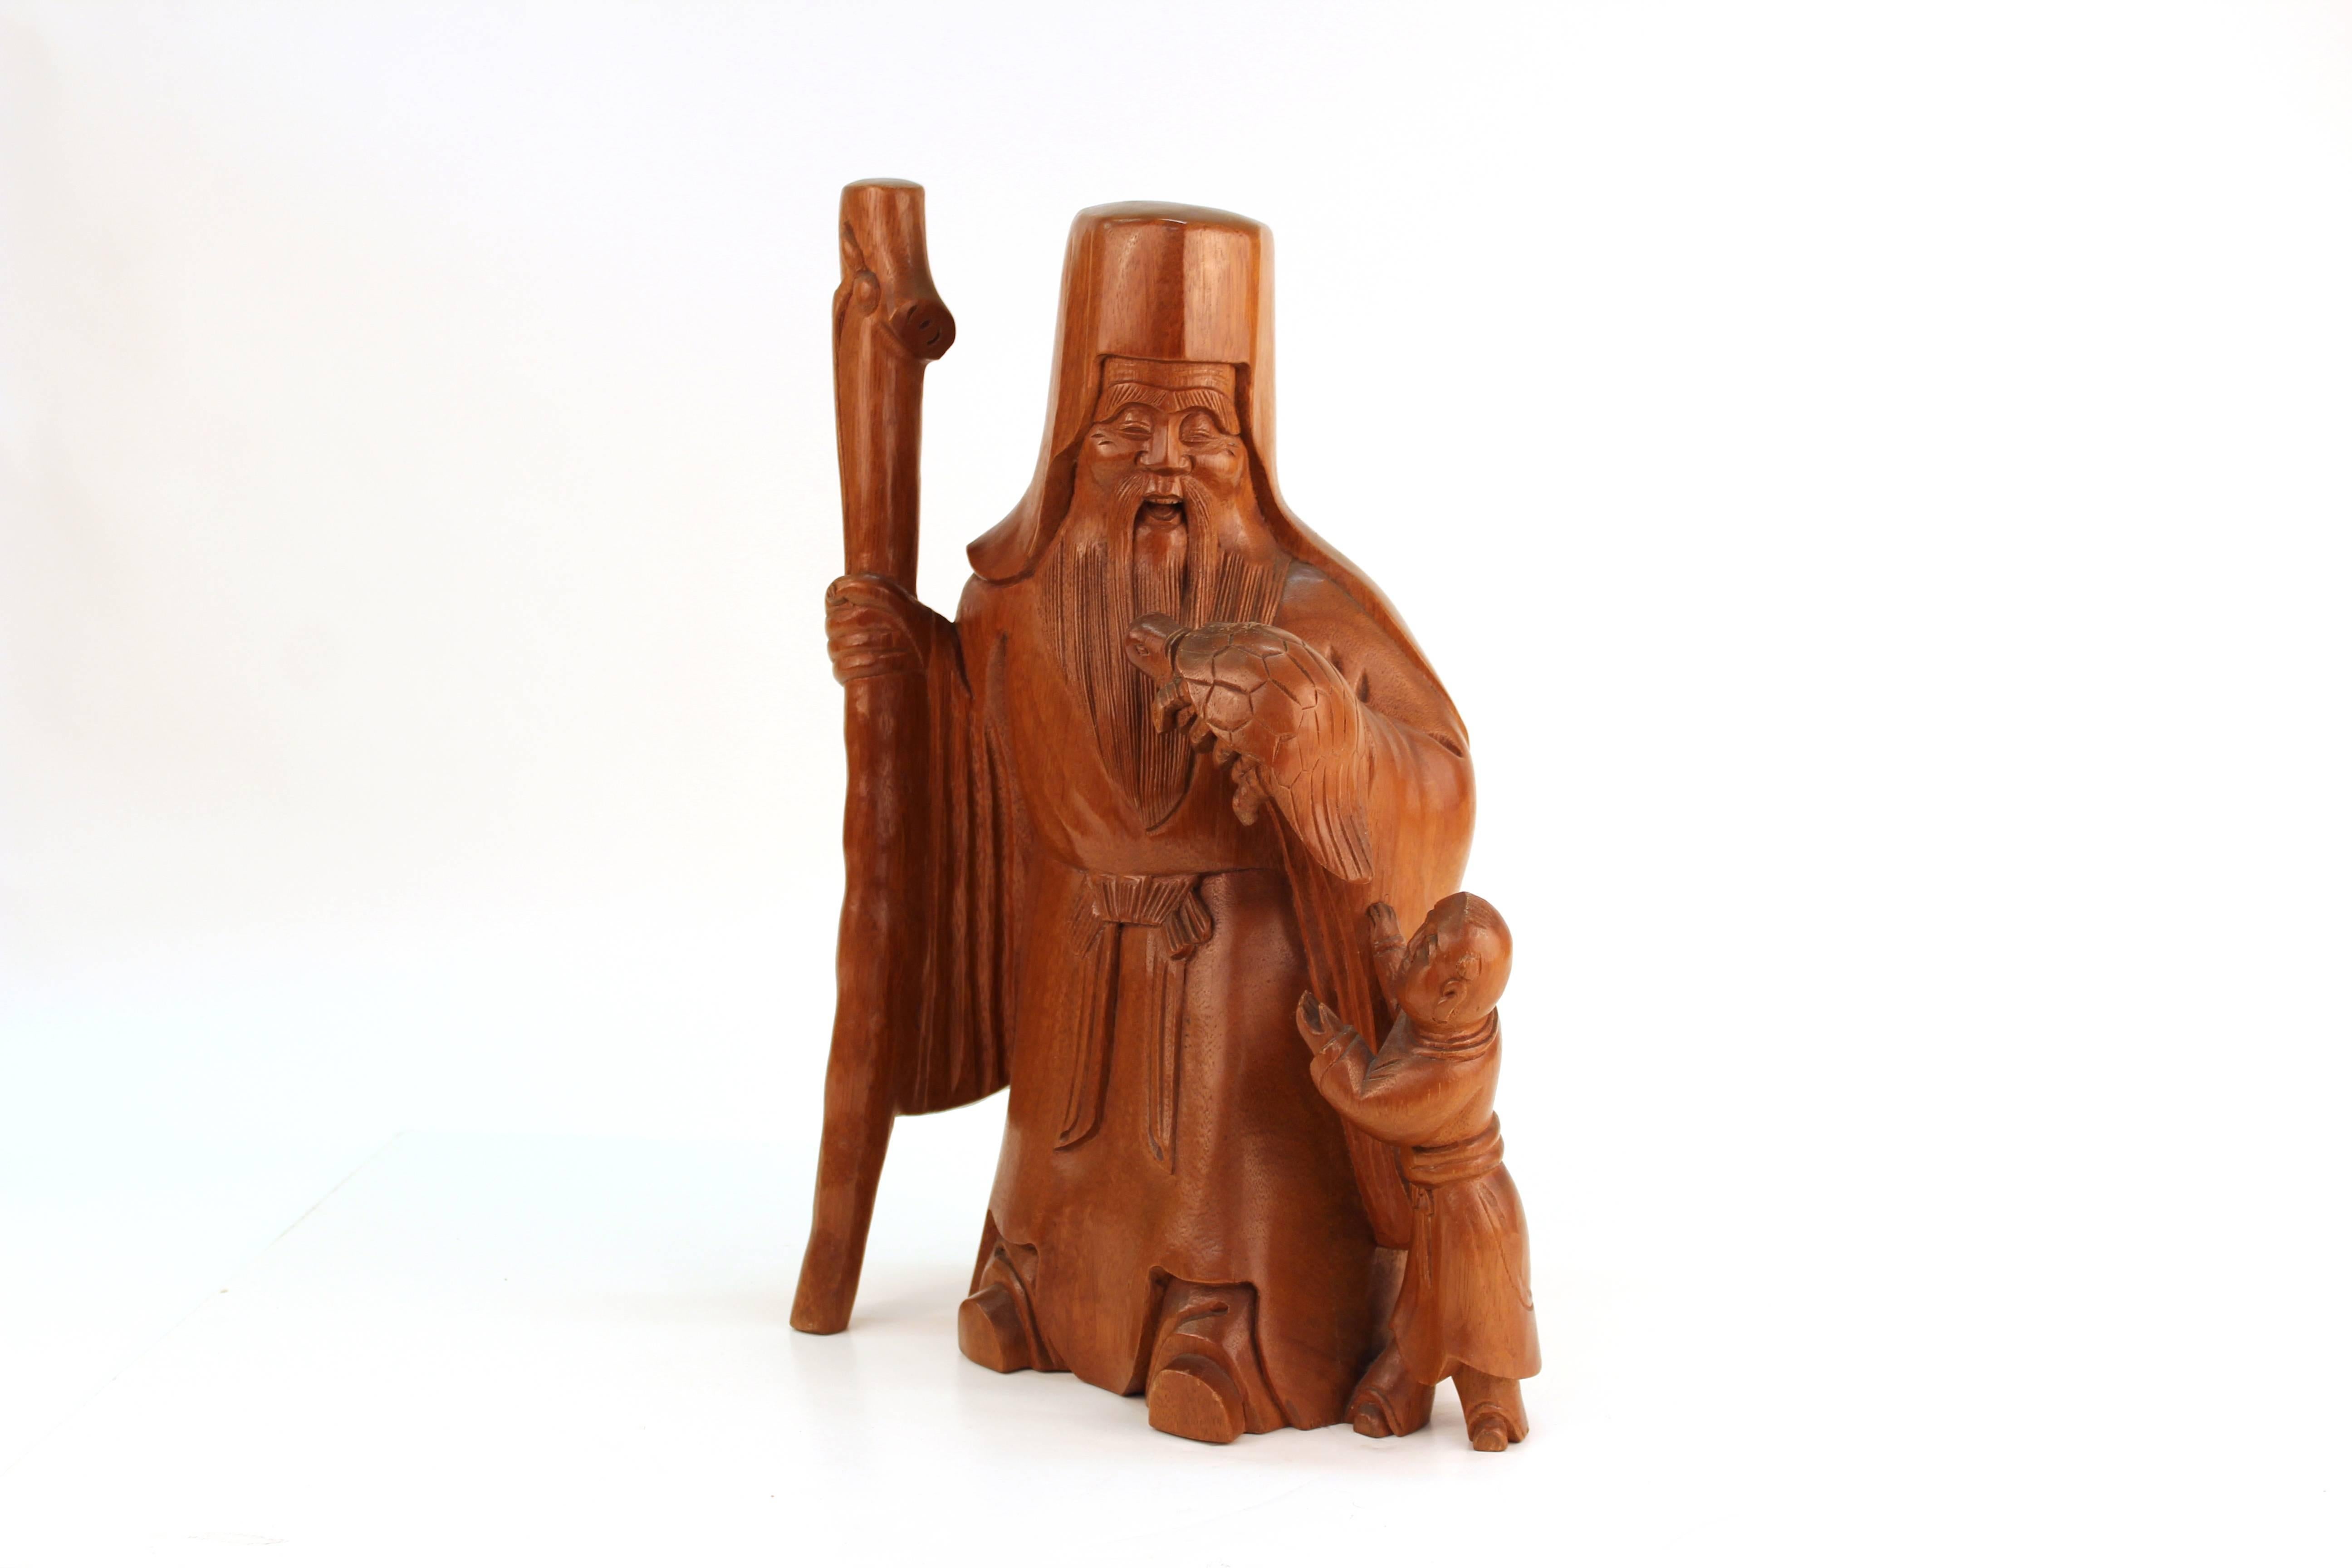 Okimono japonais en bois de palme sculpté de Jurojin (dieu de la longévité avec une tortue). Symbole de longue vie, la sculpture représente également un jeune garçon qui incarne le début de la vie. Sculpté d'une seule pièce de buis avec une belle